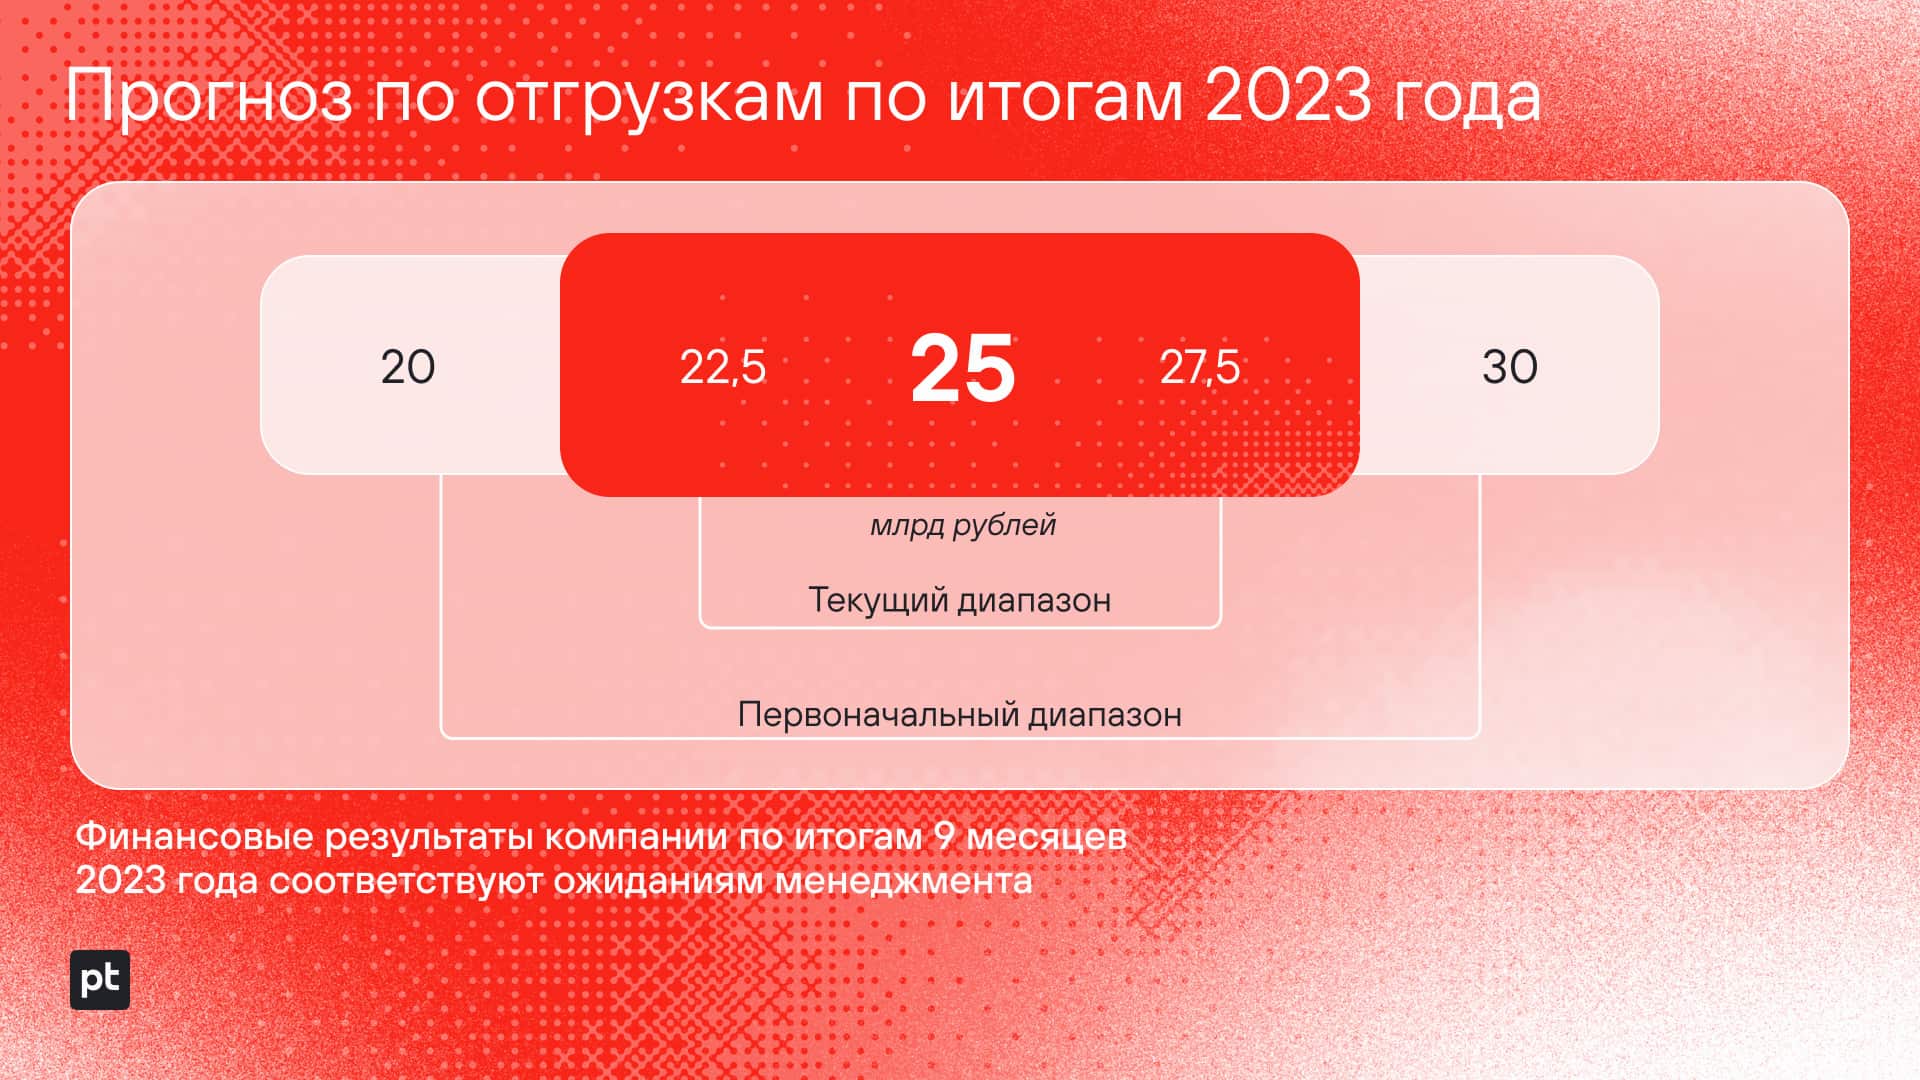 Ключевые результаты деятельности компании и ожидания менеджмента по итогам 2023 года